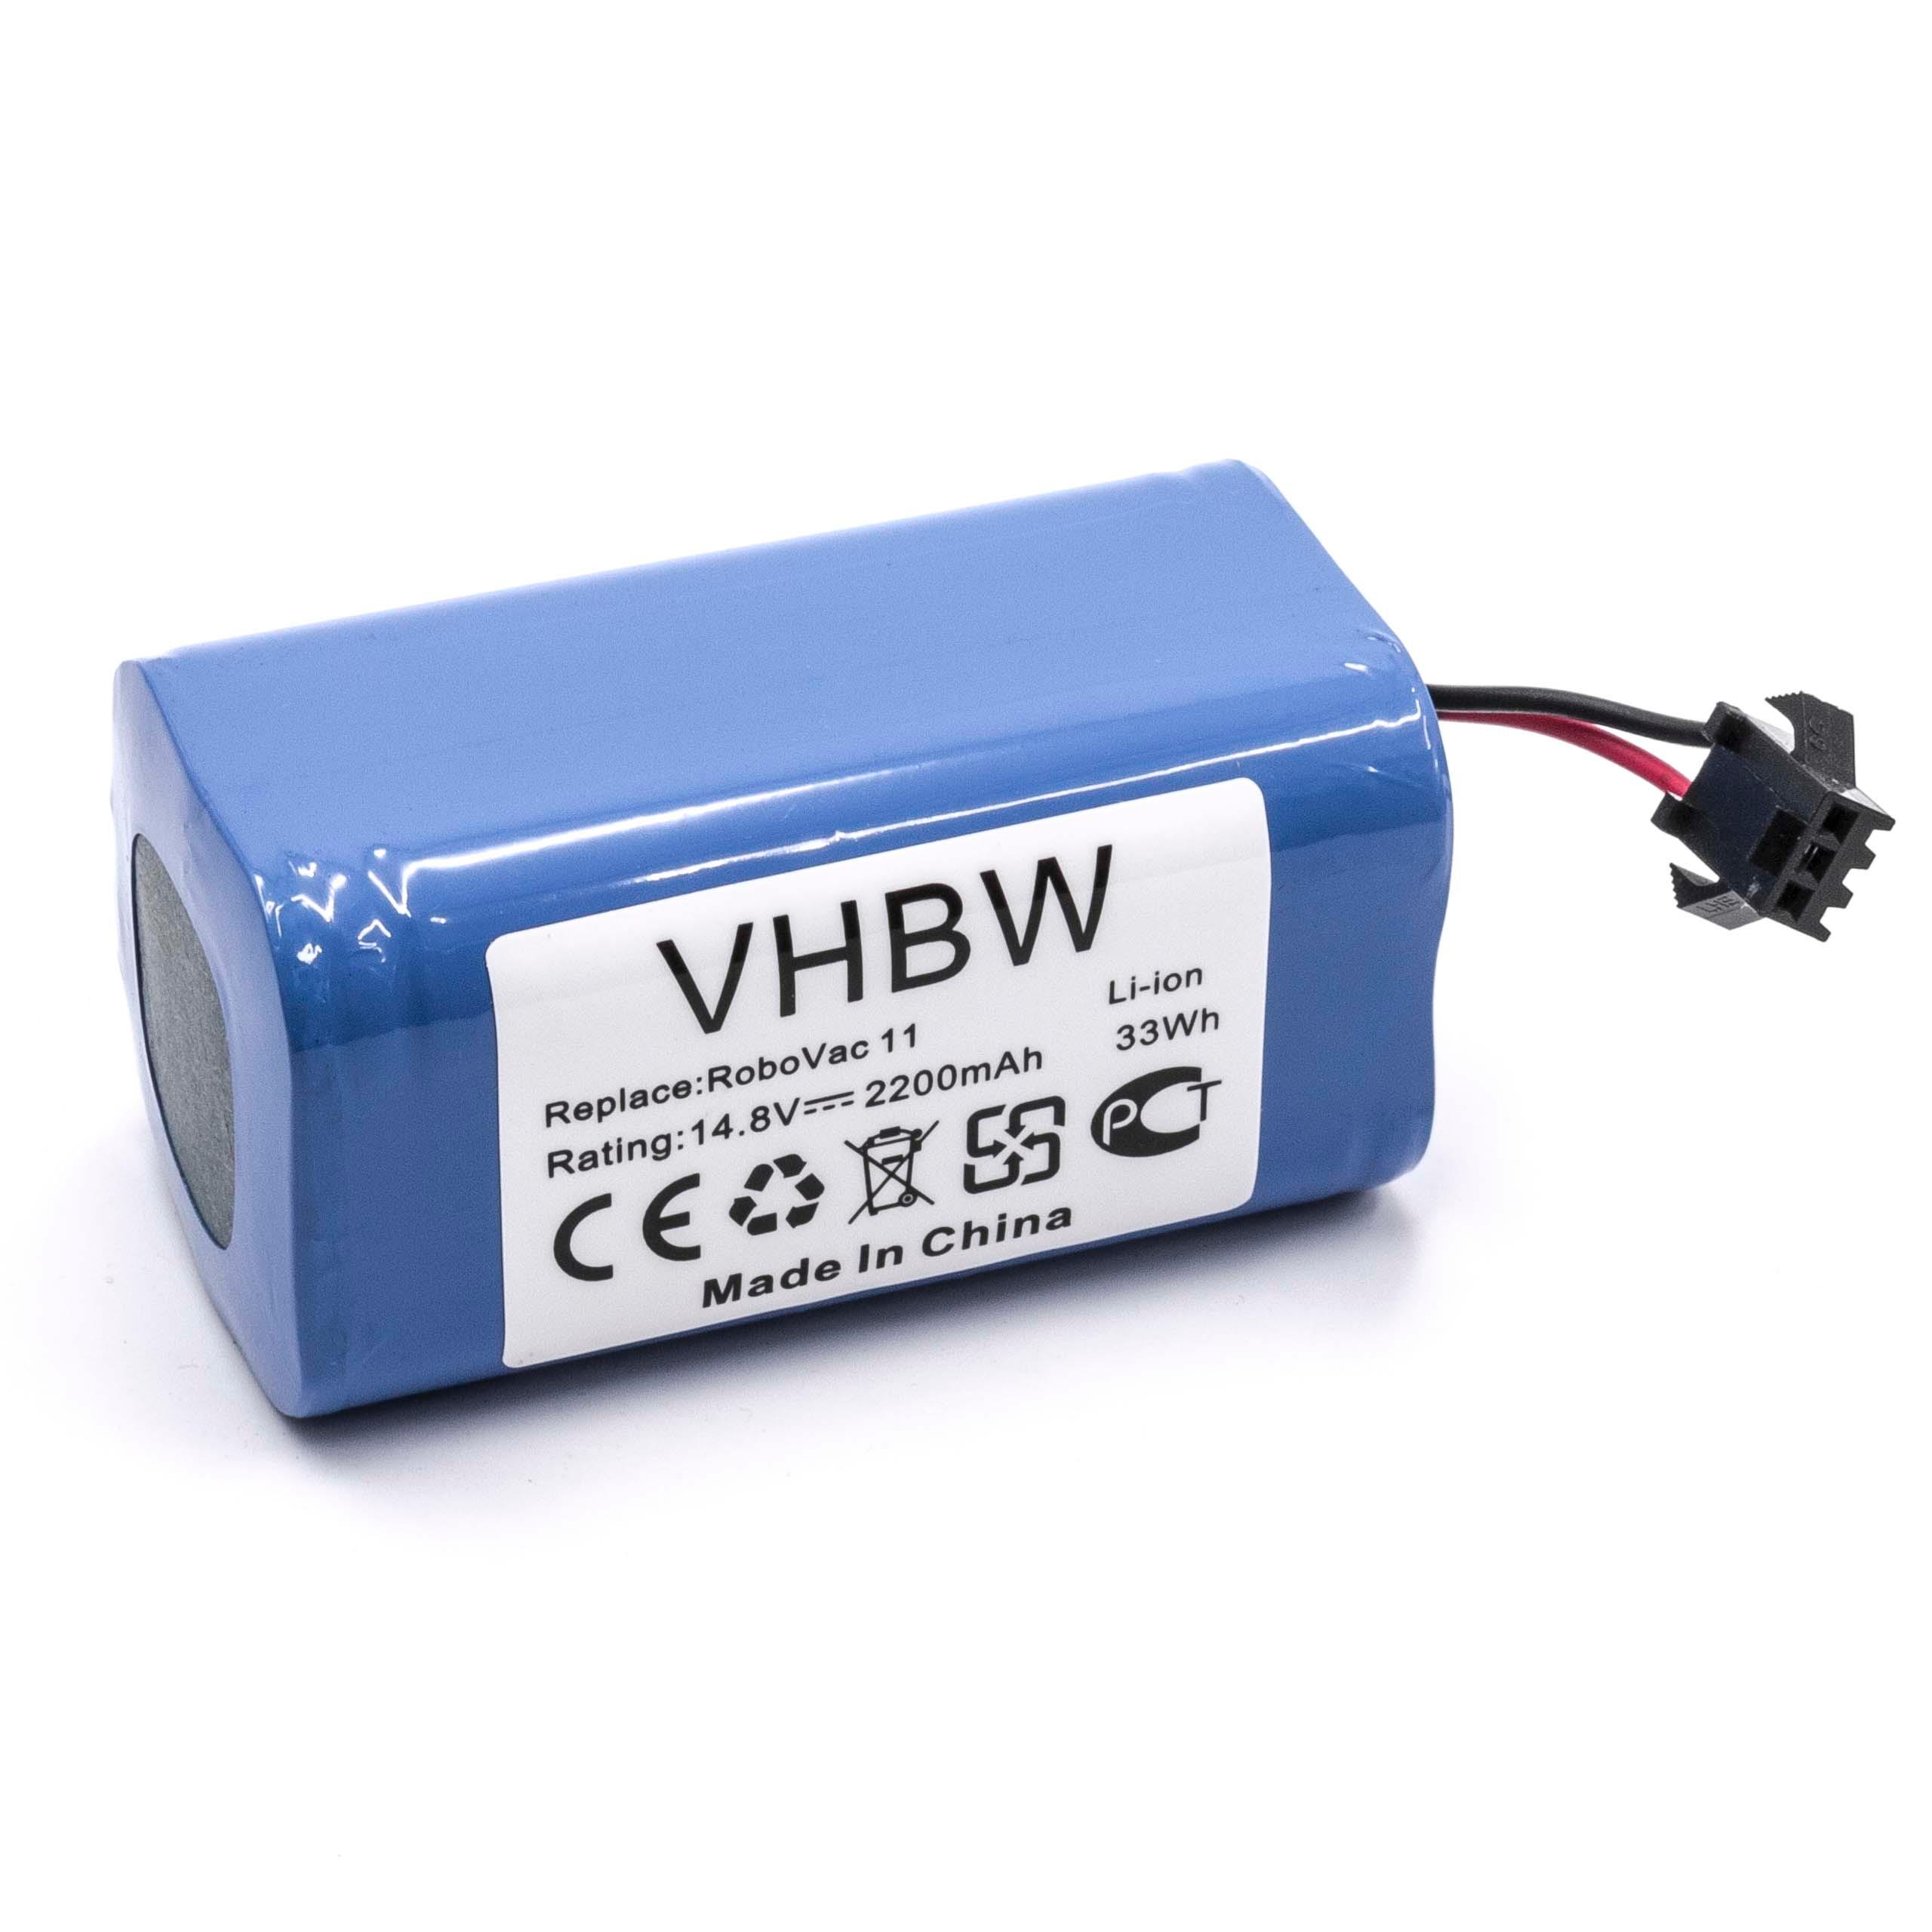 Batterie remplace Cecotec CONG1002 pour robot aspirateur - 2200mAh 14,8V Li-ion